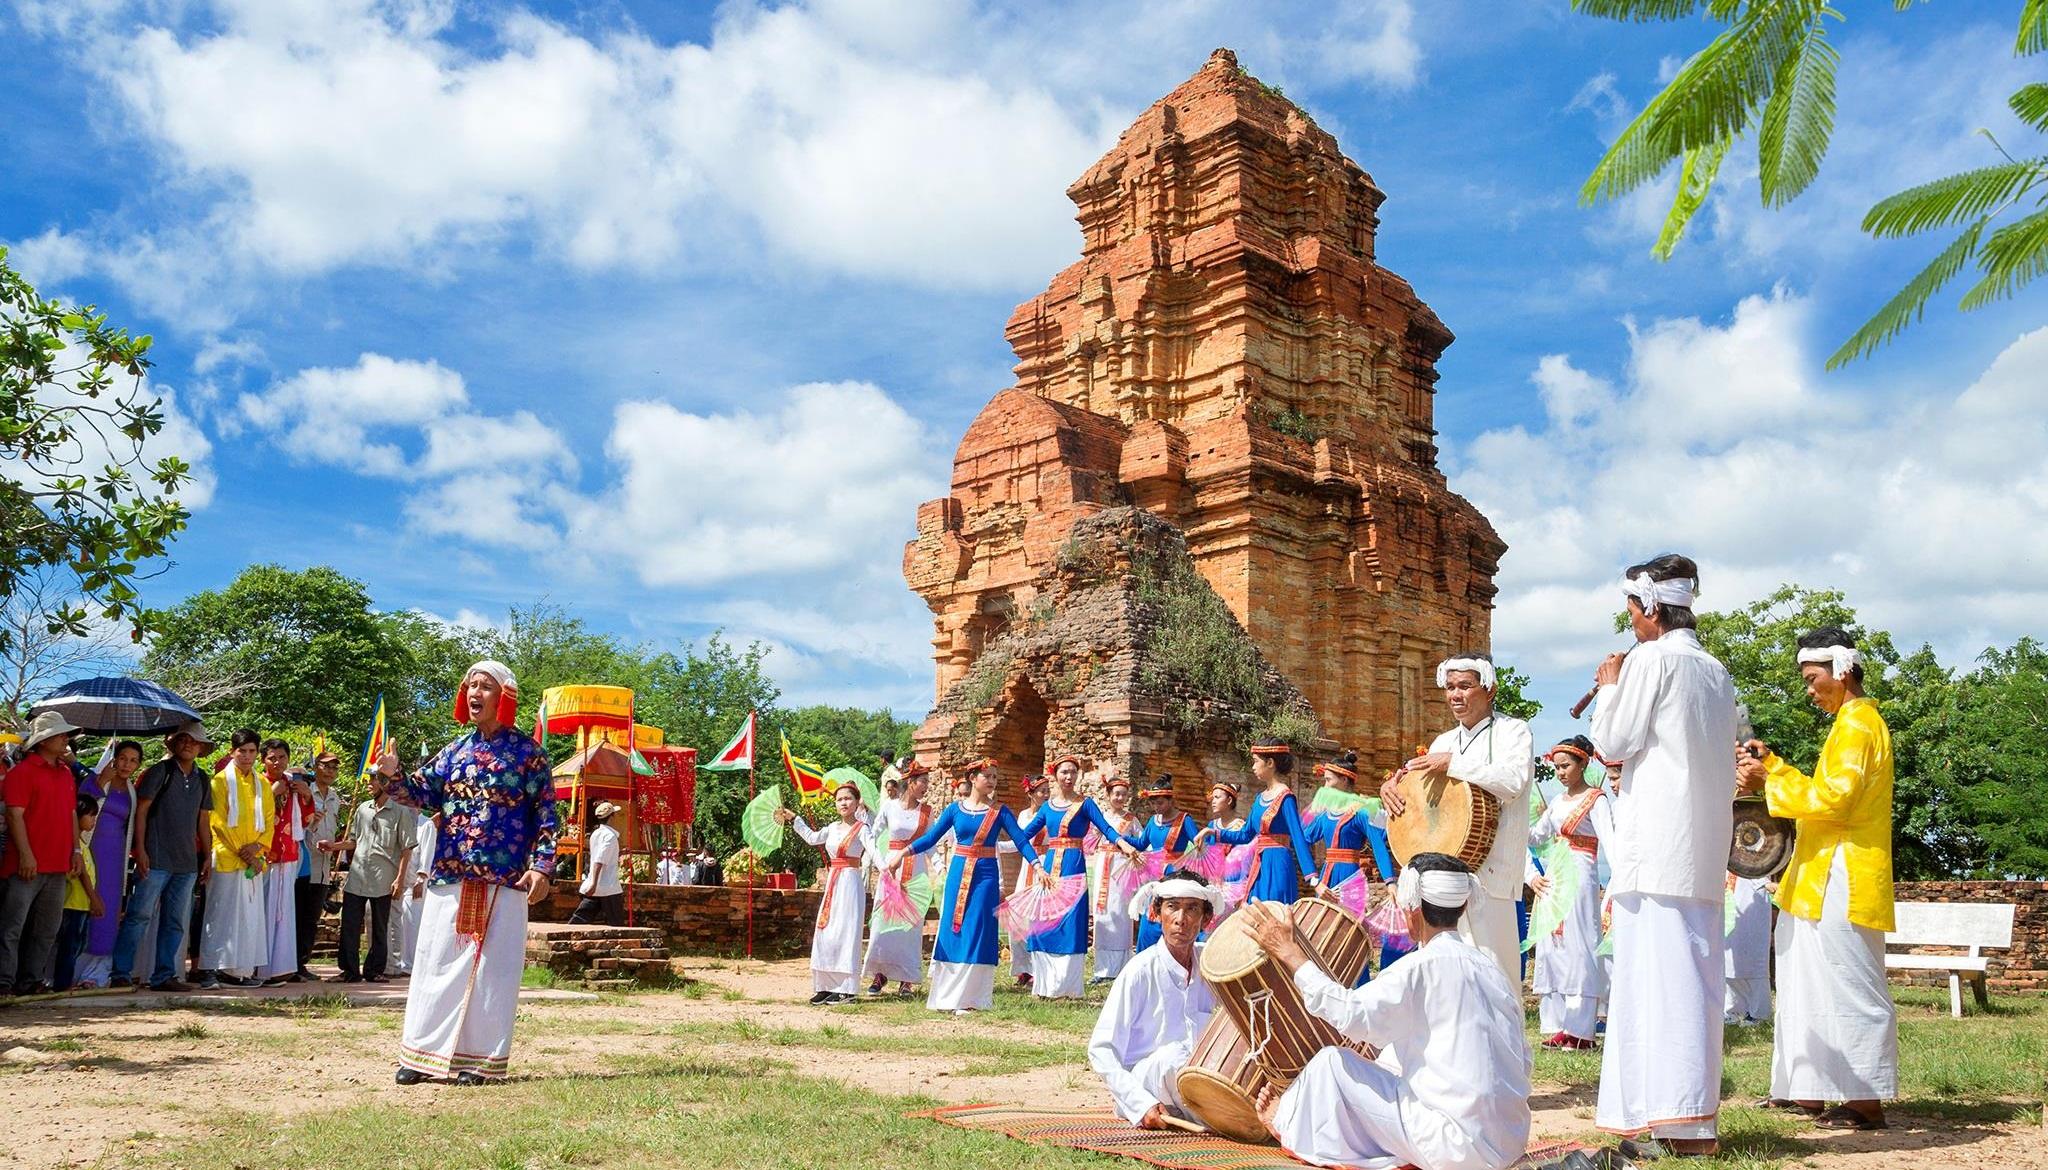 Giới thiệu về lễ hội Po Dam của dân tộc Chăm tại Bình Thuận